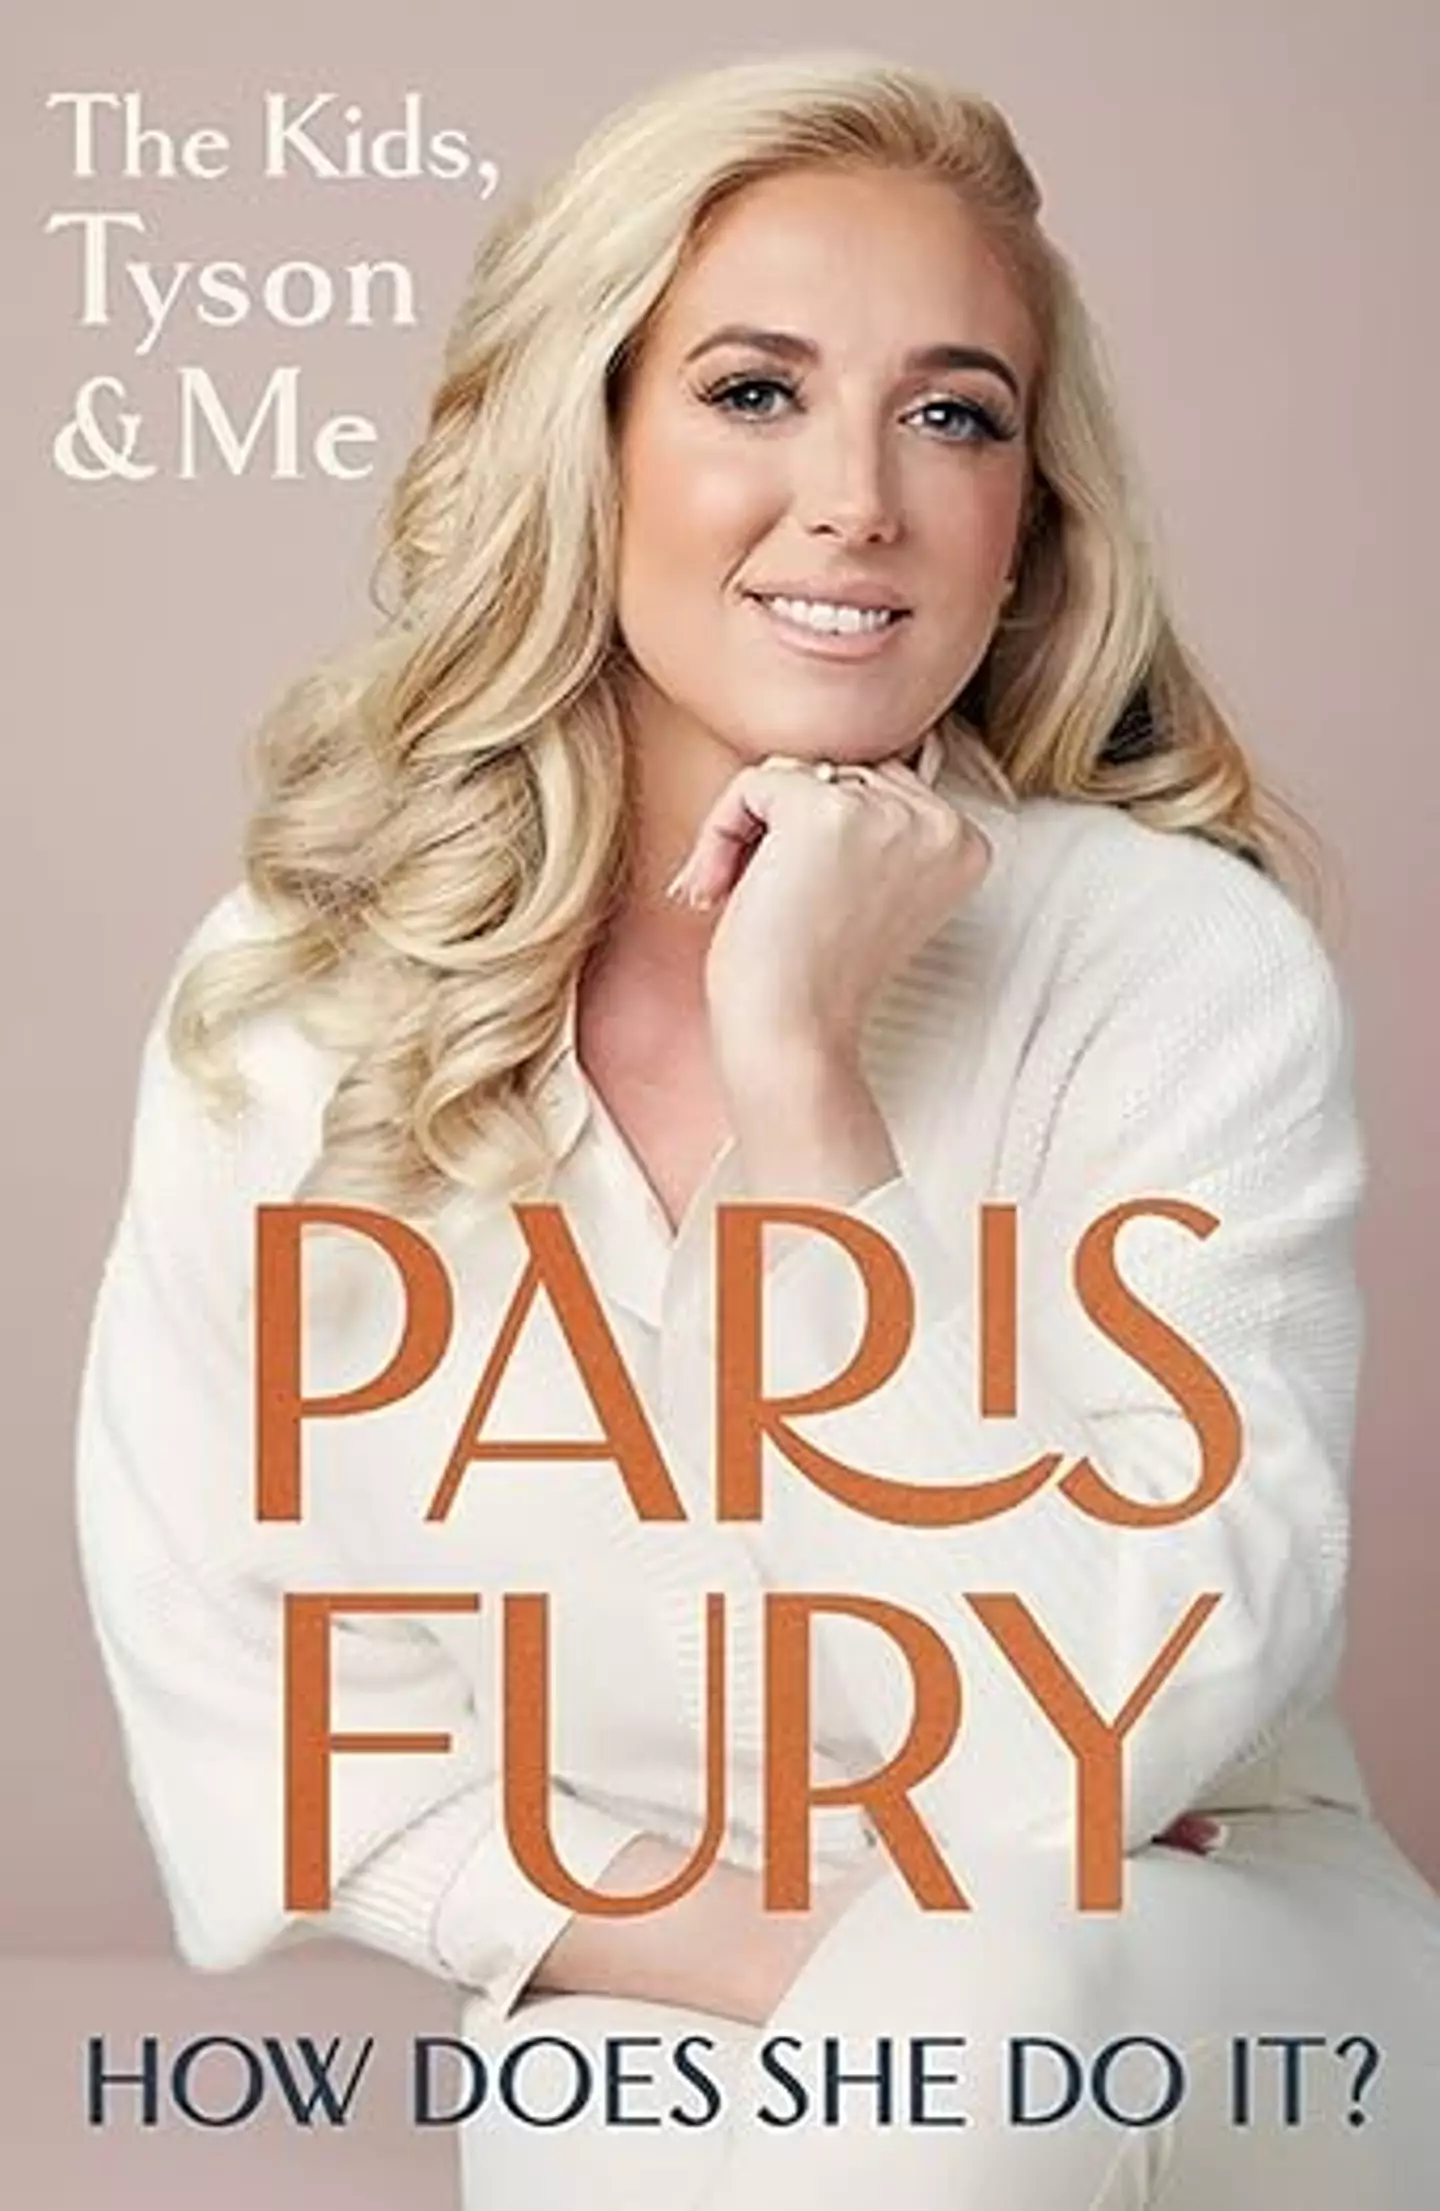 Paris Fury's new book.